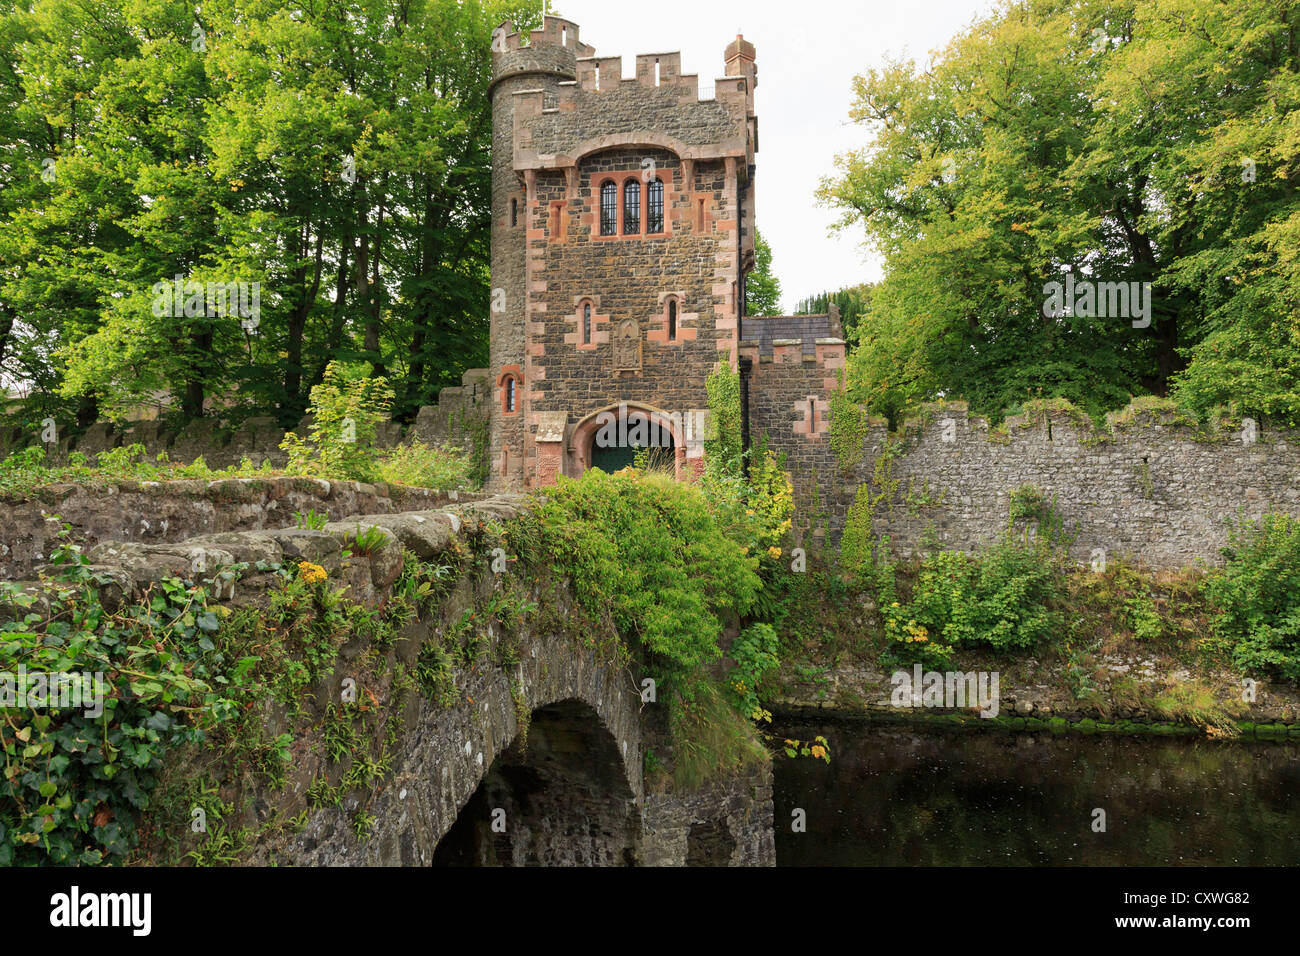 Puente sobre el río Glenarm a puerta torre barbacana entrada al castillo de Glenarm en Glenarm, Condado de Antrim, Irlanda del Norte, Reino Unido, Gran Bretaña Foto de stock